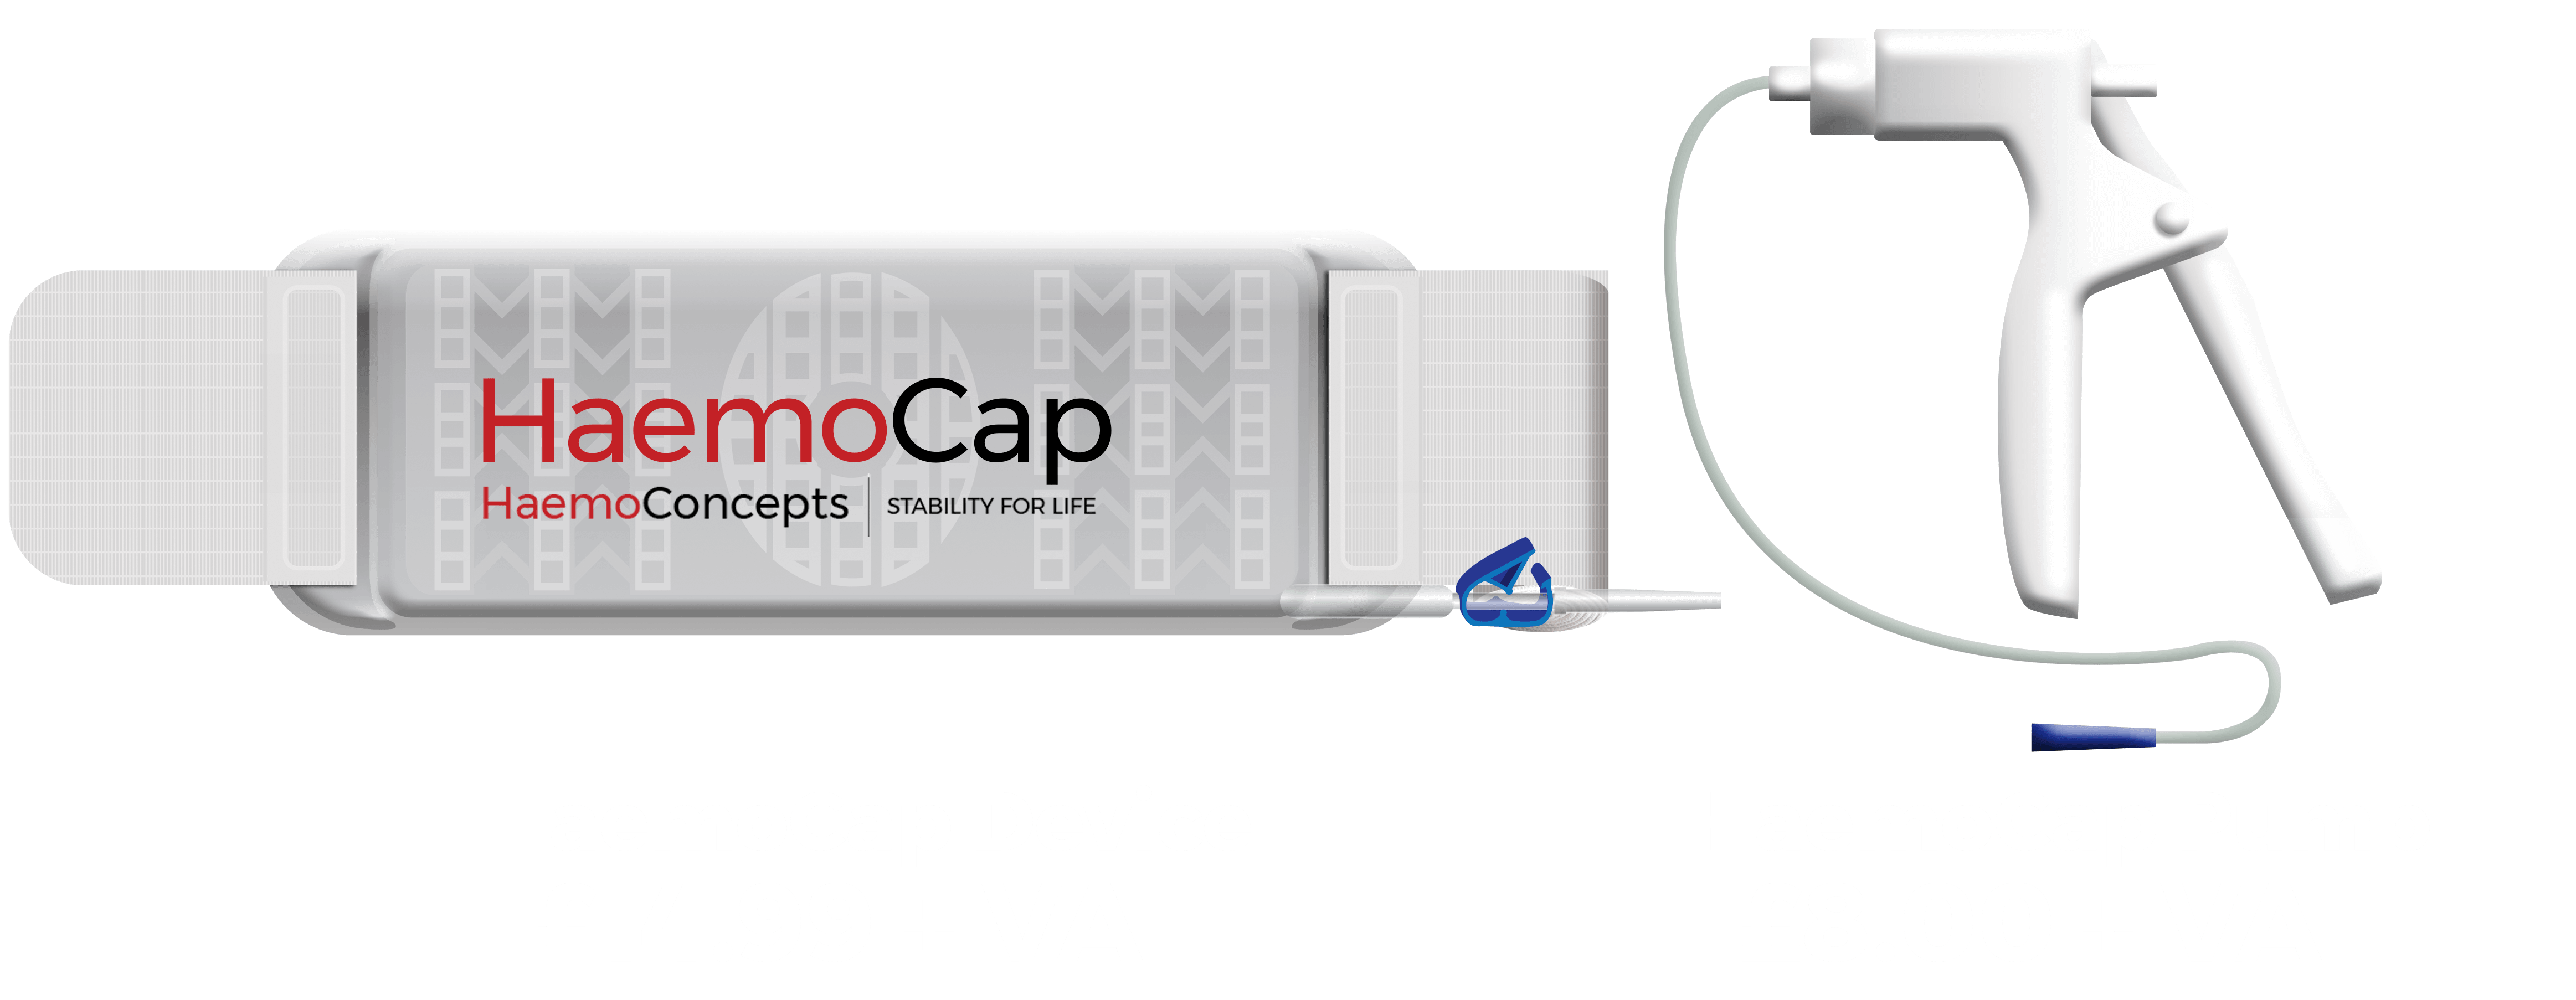 HaemoCap Product Prices